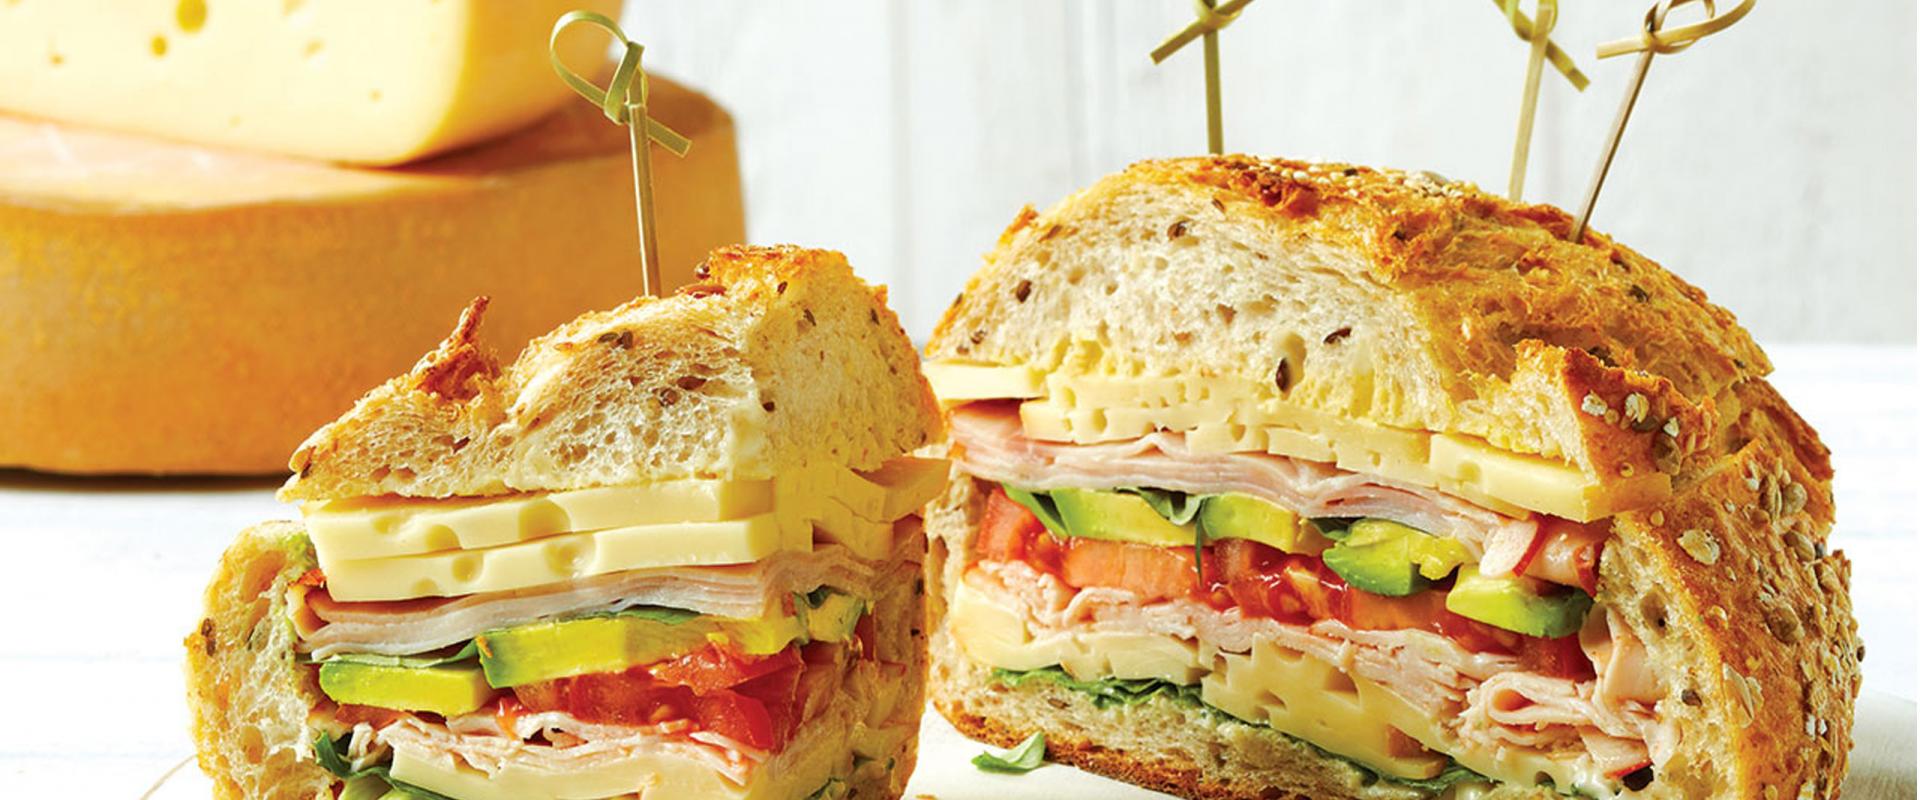 OKA Swiss-style family size sandwich